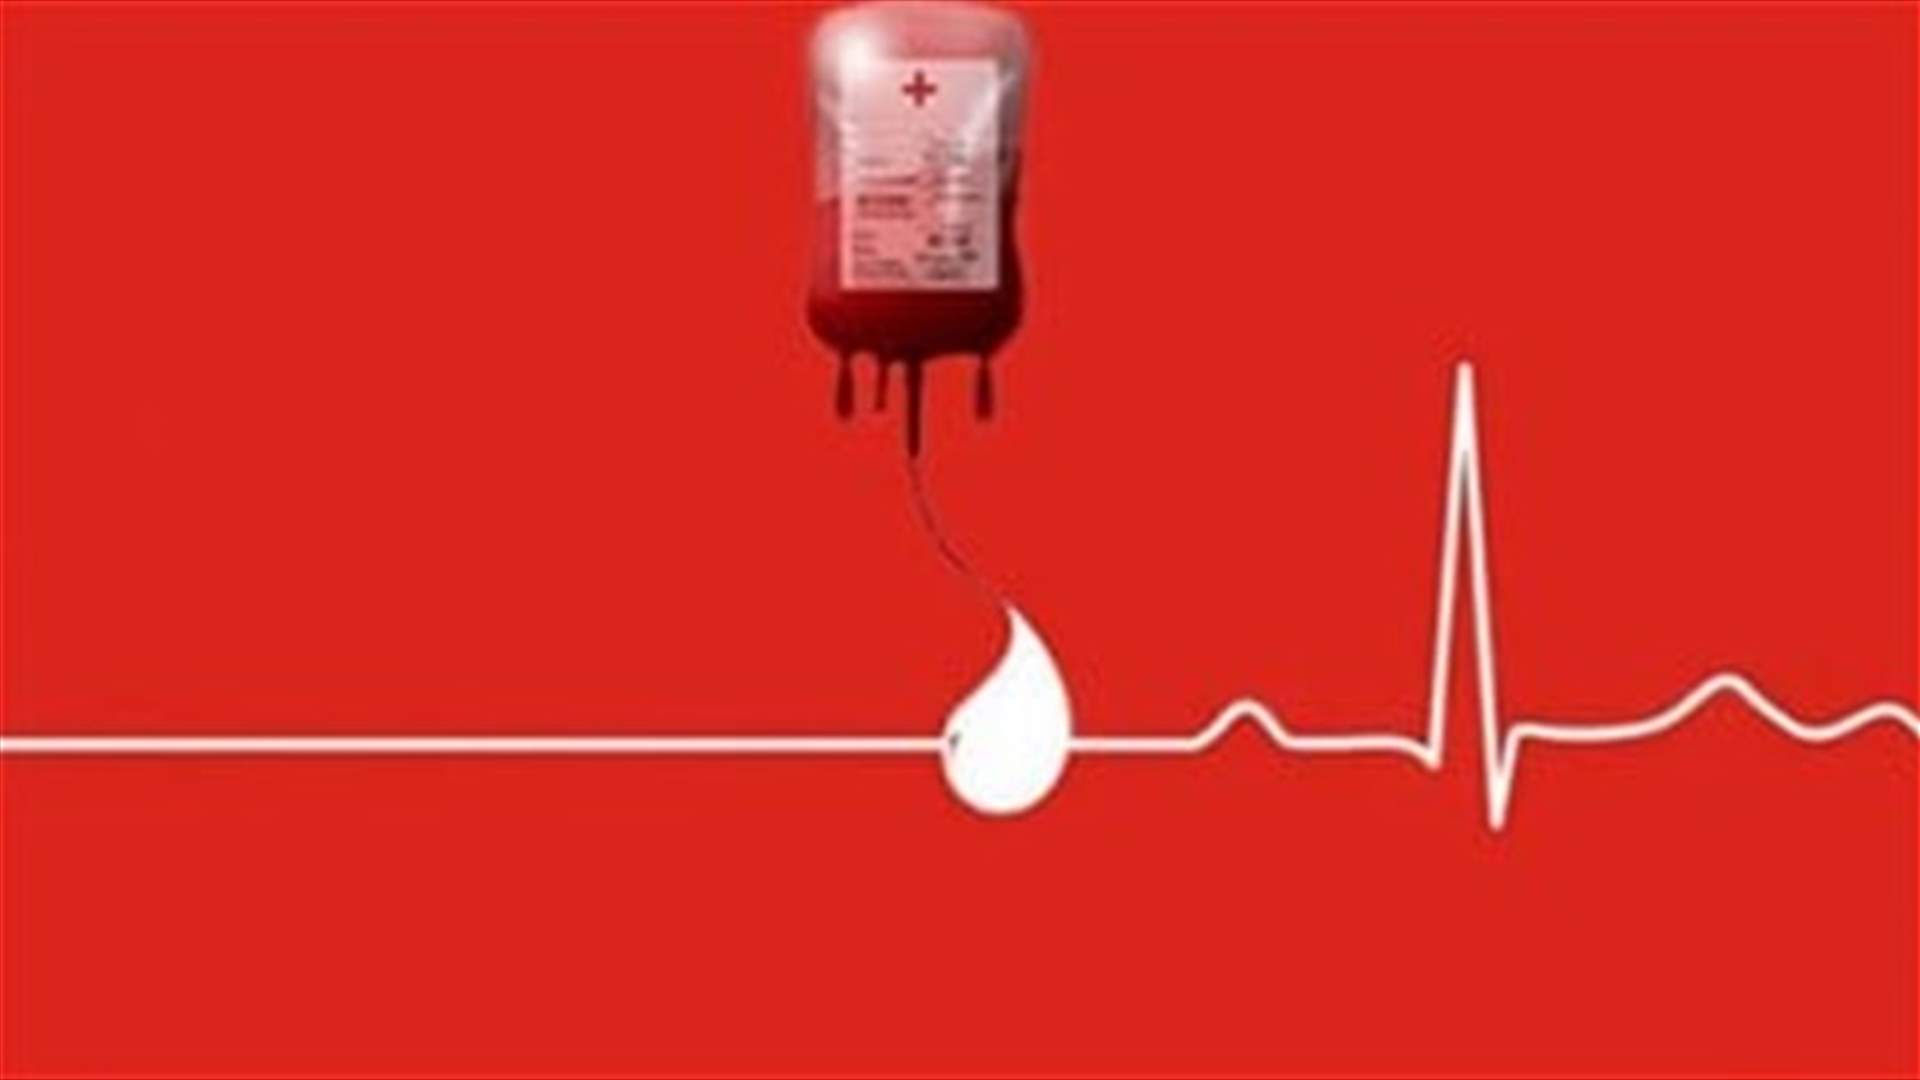 مريض في مستشفى القديس جاورجيوس بحاجة ماسّة لوحدات دم من فئة A+ ... للتبرّع يُرجى الاتصال على الرقم التالي: 03841106